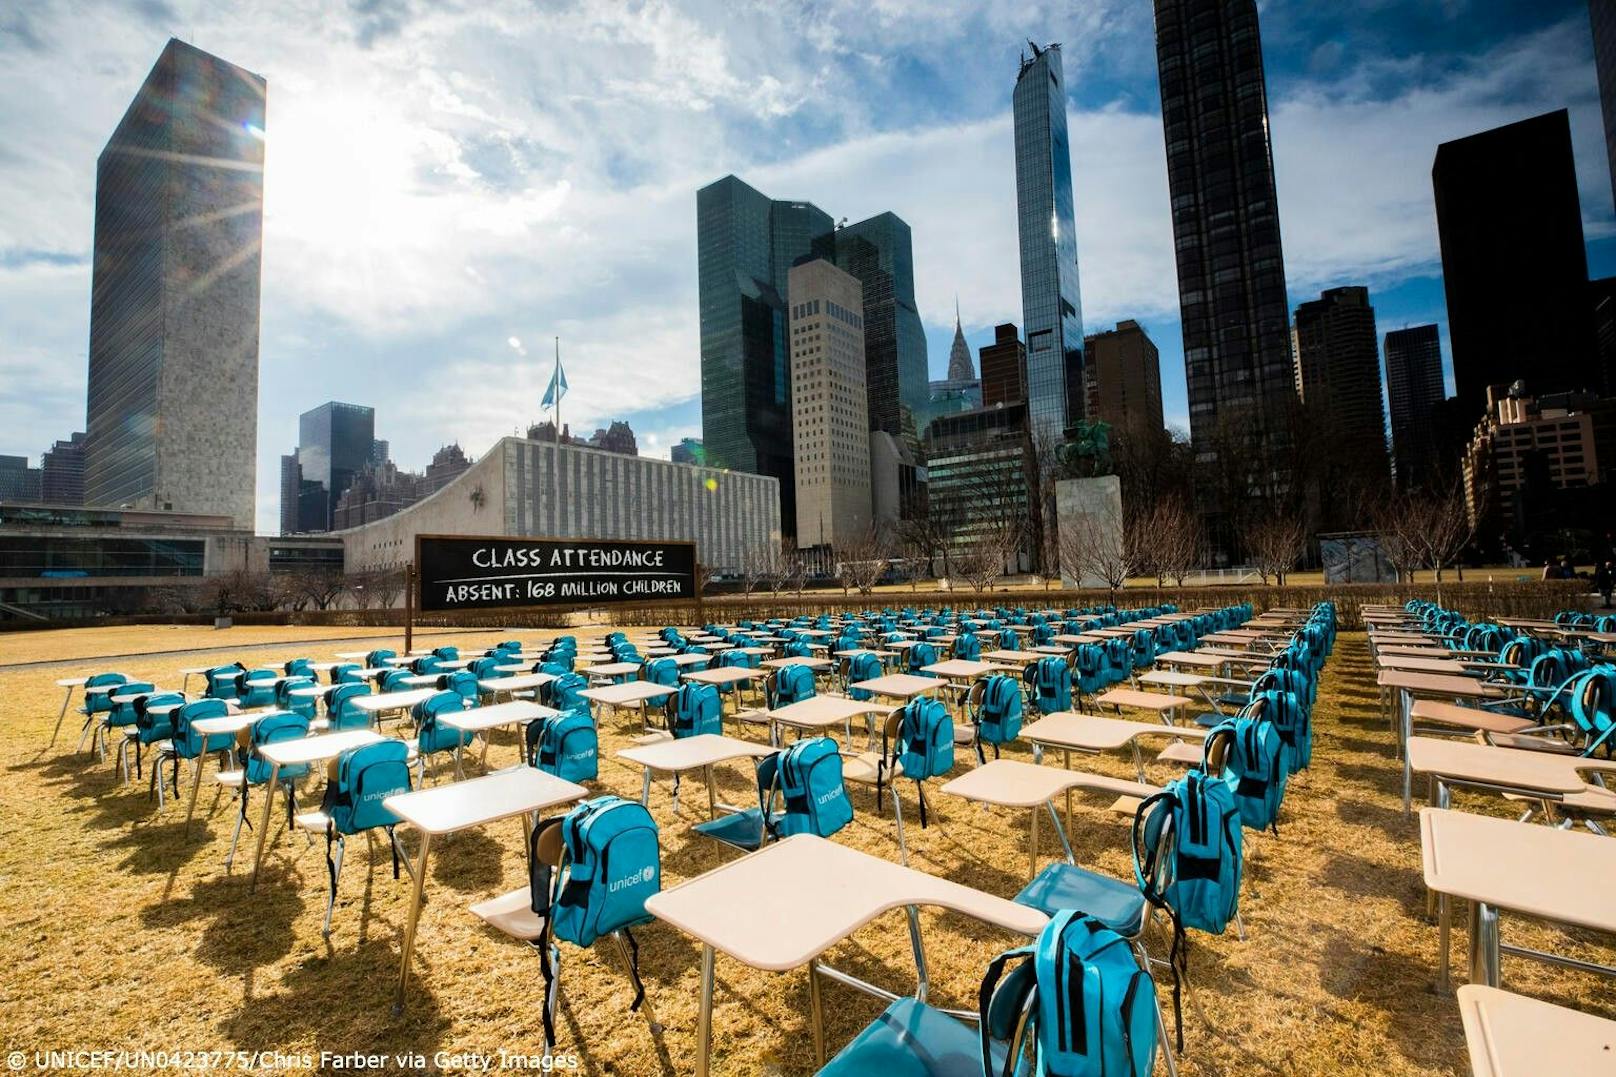 168 Tische, 168 Stühle und 168 Rucksäcke stehen für 168. Millionen Kinder ohne Schulbildung während der Pandemie. 